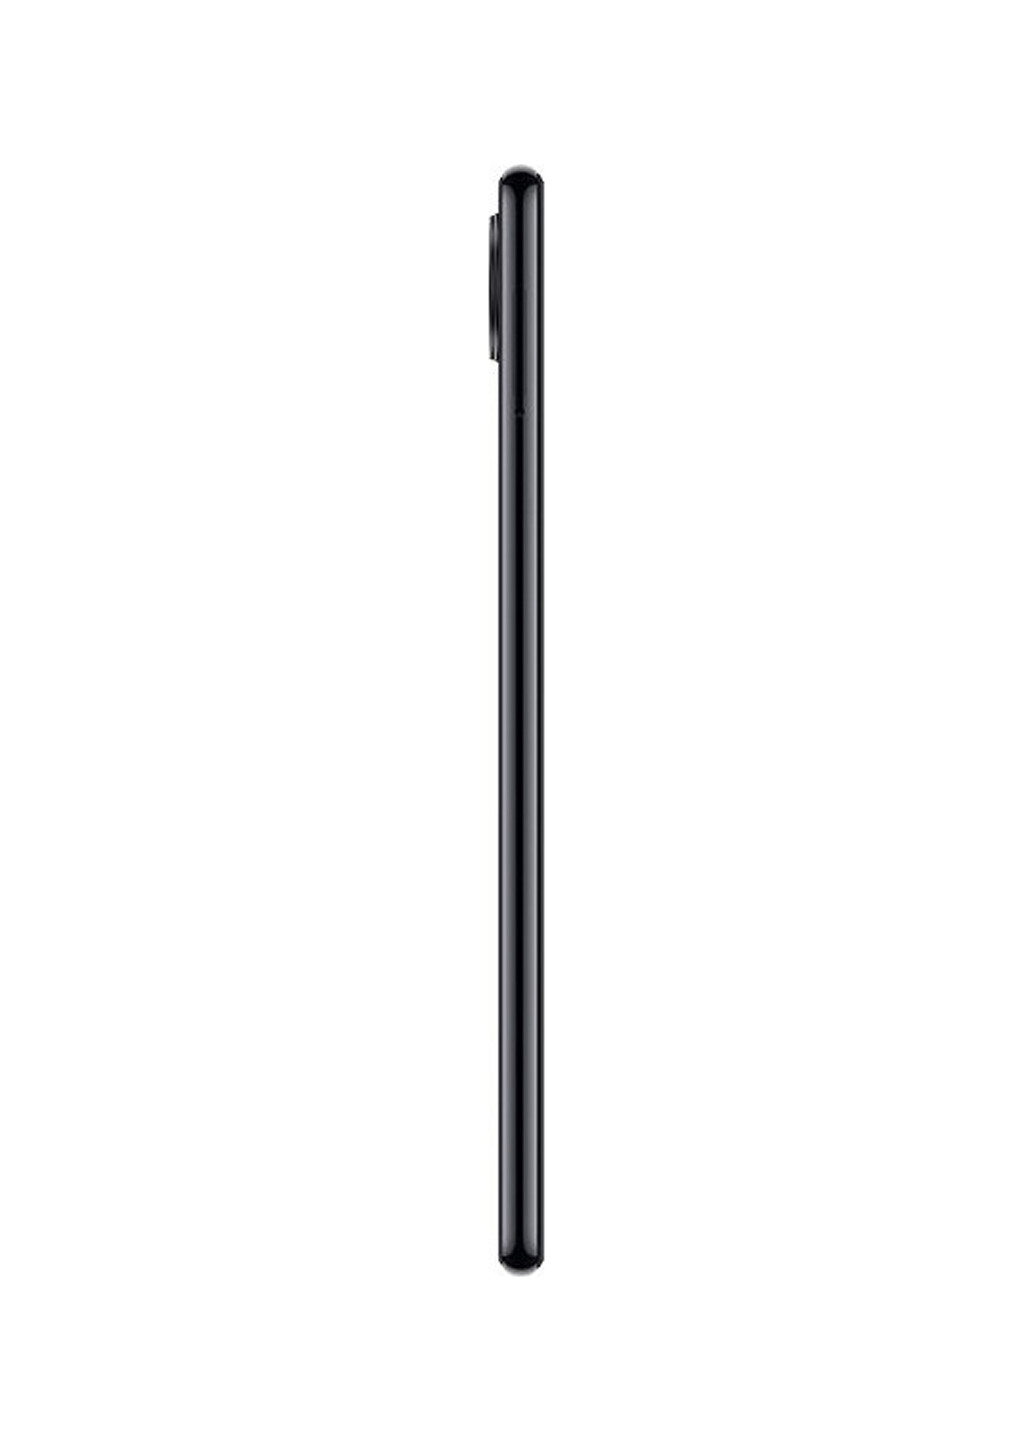 Смартфон Xiaomi redmi note 7 3/32gb space black (130569694)